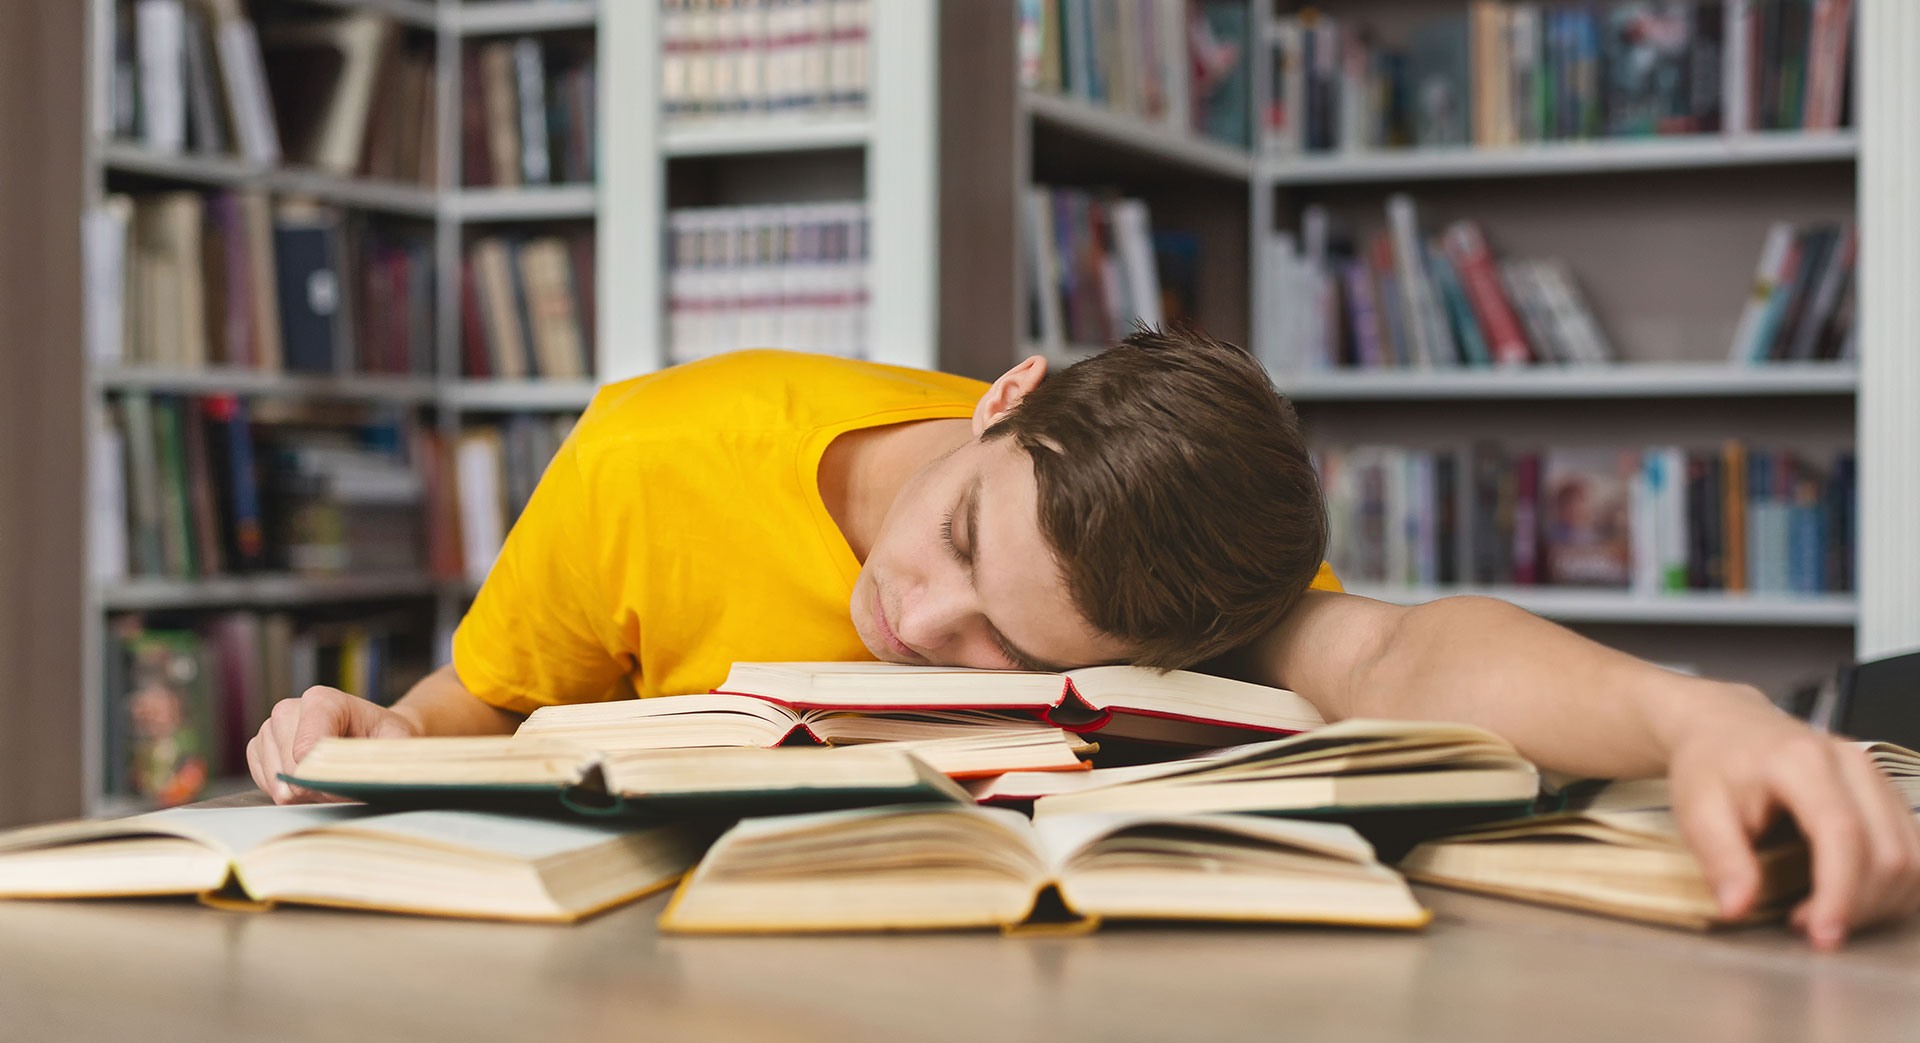 Un homme endormi sur une pile de livres